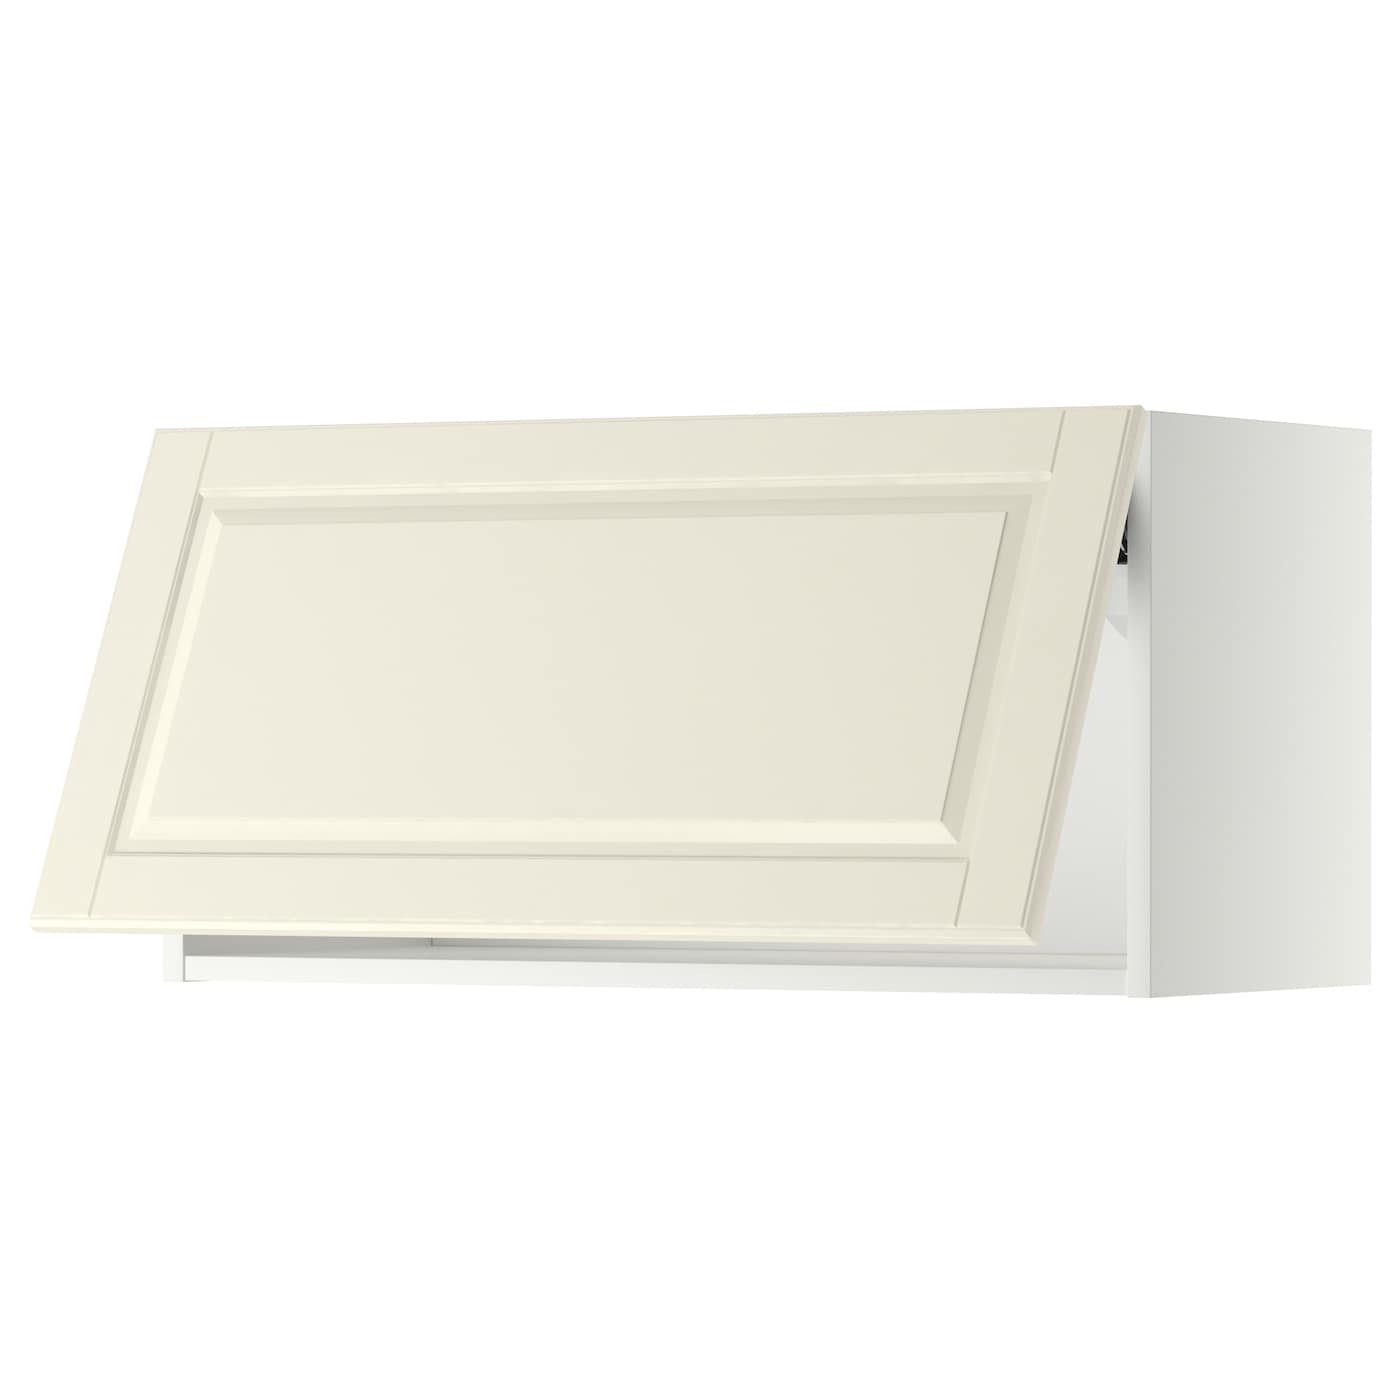 Навесной шкаф - METOD IKEA/ МЕТОД ИКЕА, 40х80 см, белый/кремовый